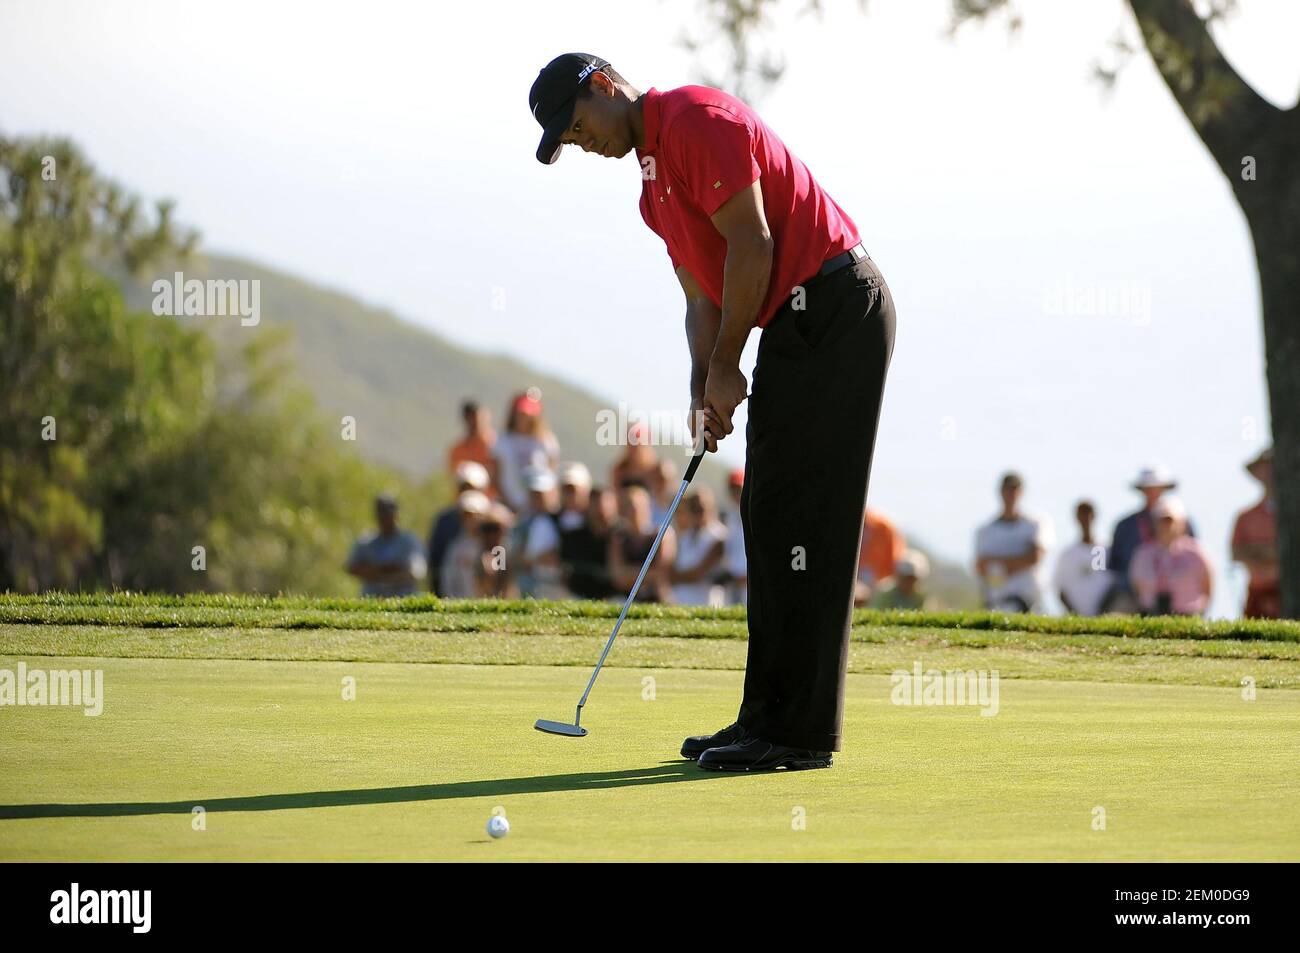 San Diego, Californie. 15 juin 2008. Tiger Woods (USA) sur le green du dimanche 16 trous lors de la dernière partie de l'US Open au parcours de golf de Torrey Pines, à la Jolla, Californie. Louis Lopez/Cal Sport Media. Crédit : csm/Alay Live News Banque D'Images